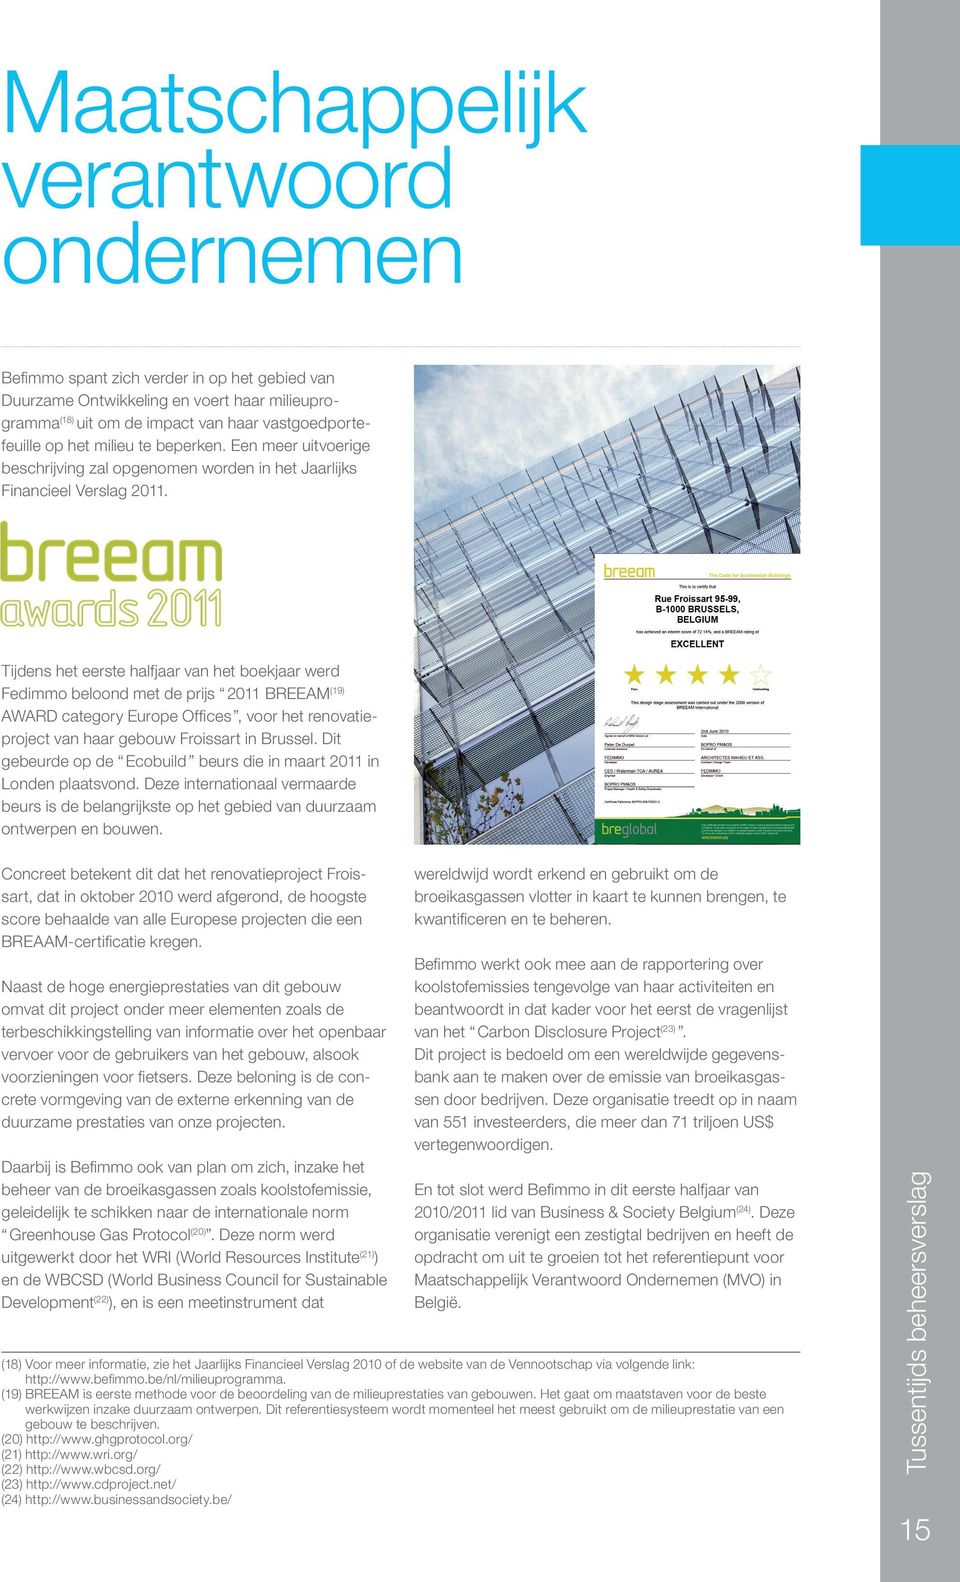 Tijdens het eerste halfjaar van het boekjaar werd Fedimmo beloond met de prijs 2011 BREEAM(19) AWARD category Europe Offices, voor het renovatieproject van haar gebouw Froissart in Brussel.